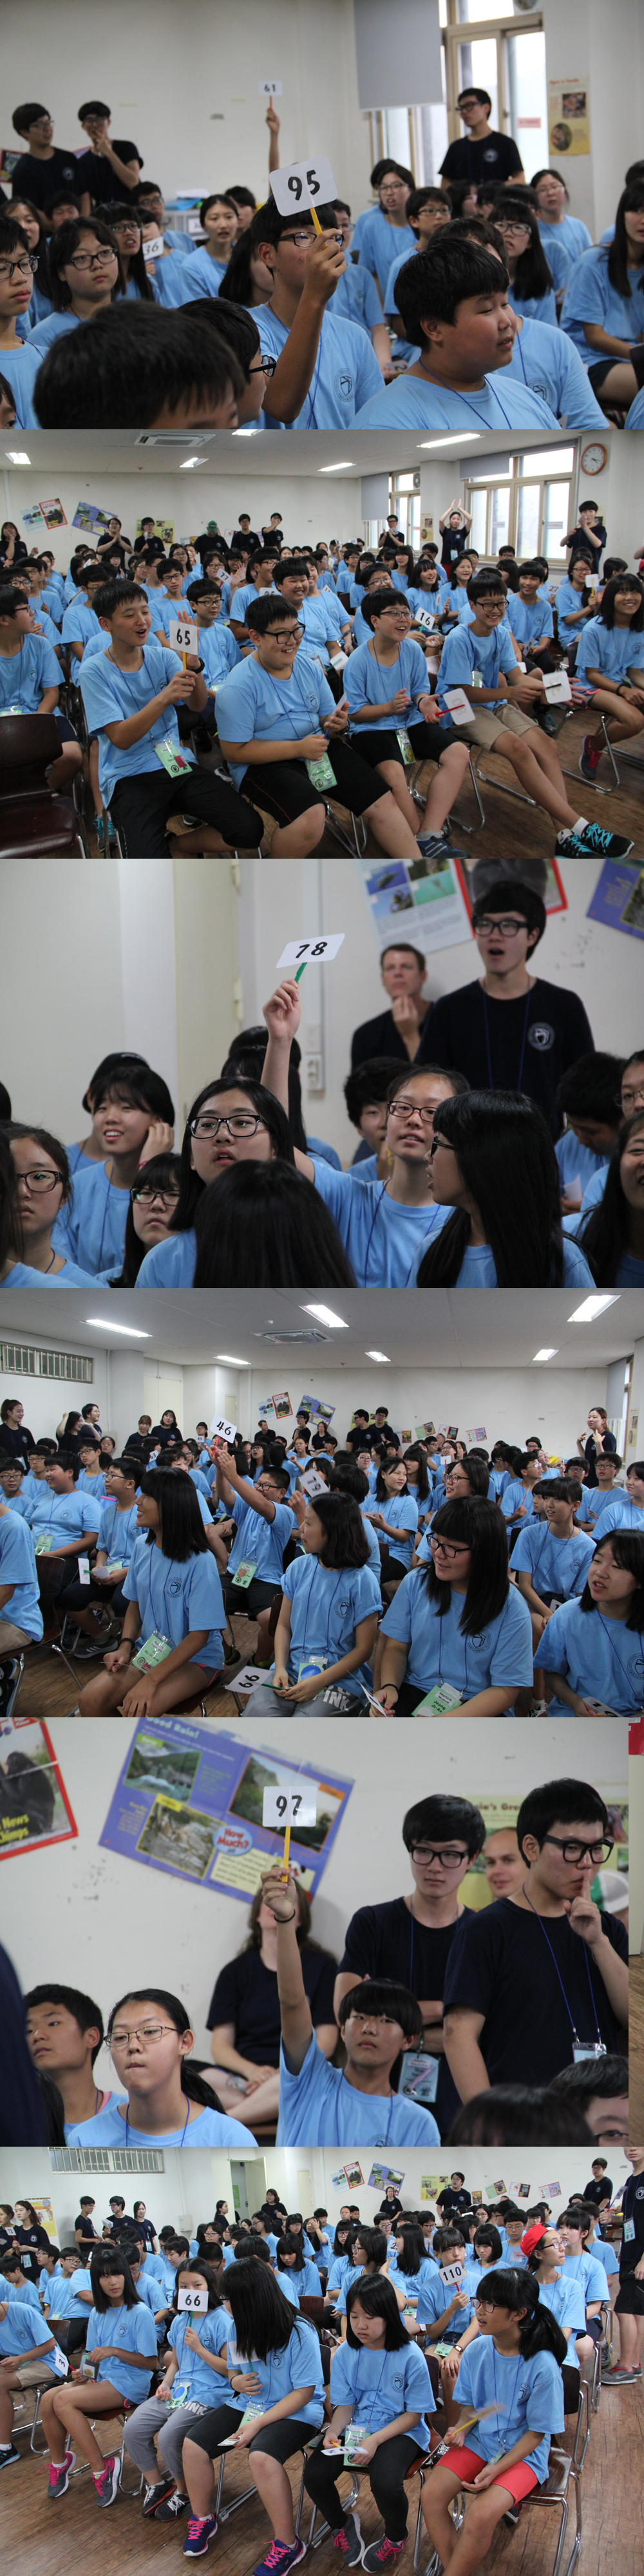 2014 한국교통대학교 중학생 영어캠프